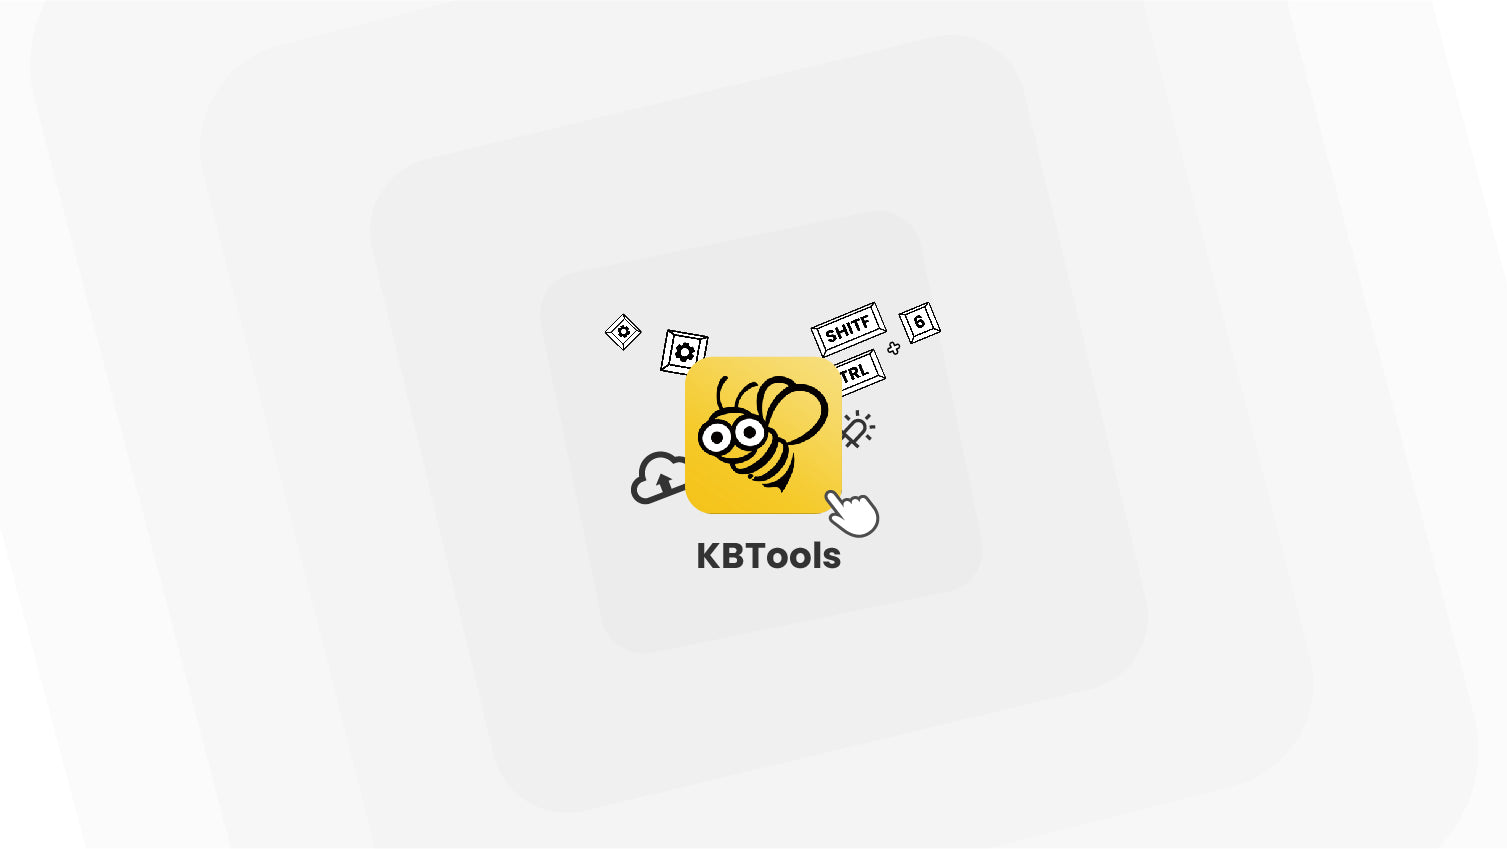 KBTools Tutorials: Rewrite Key Value, Change LED Color &More